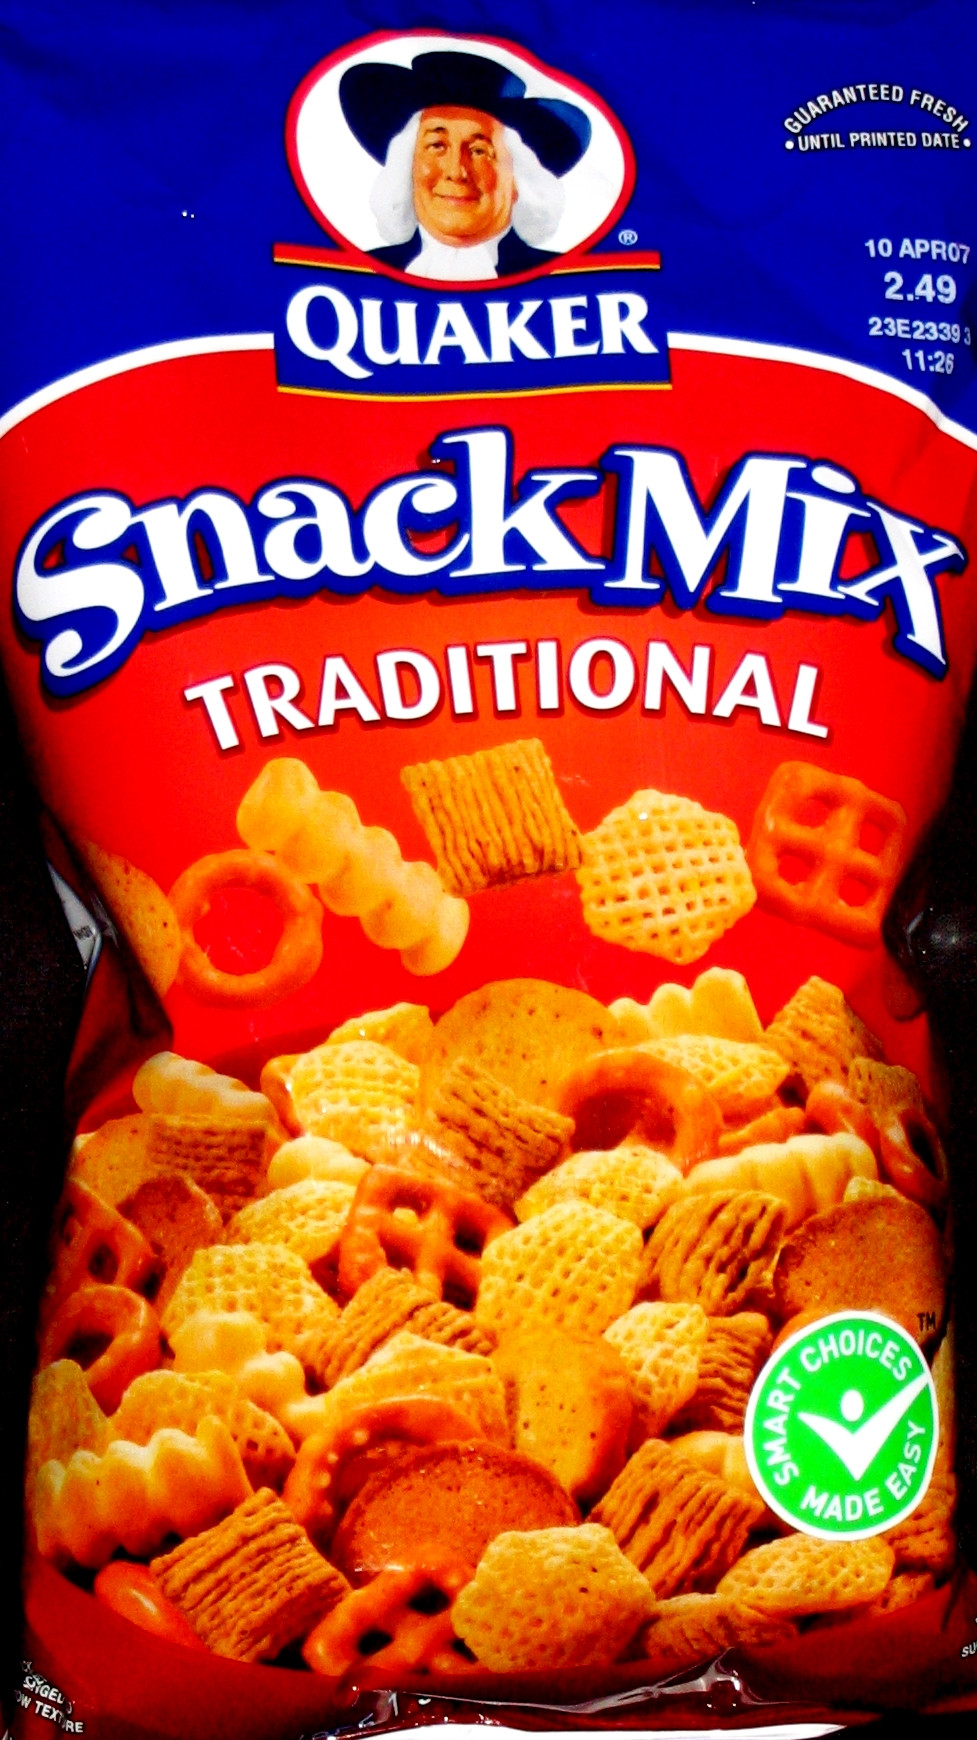 Quaker Oats Snack Mix
 Quaker Snack Mix Traditional